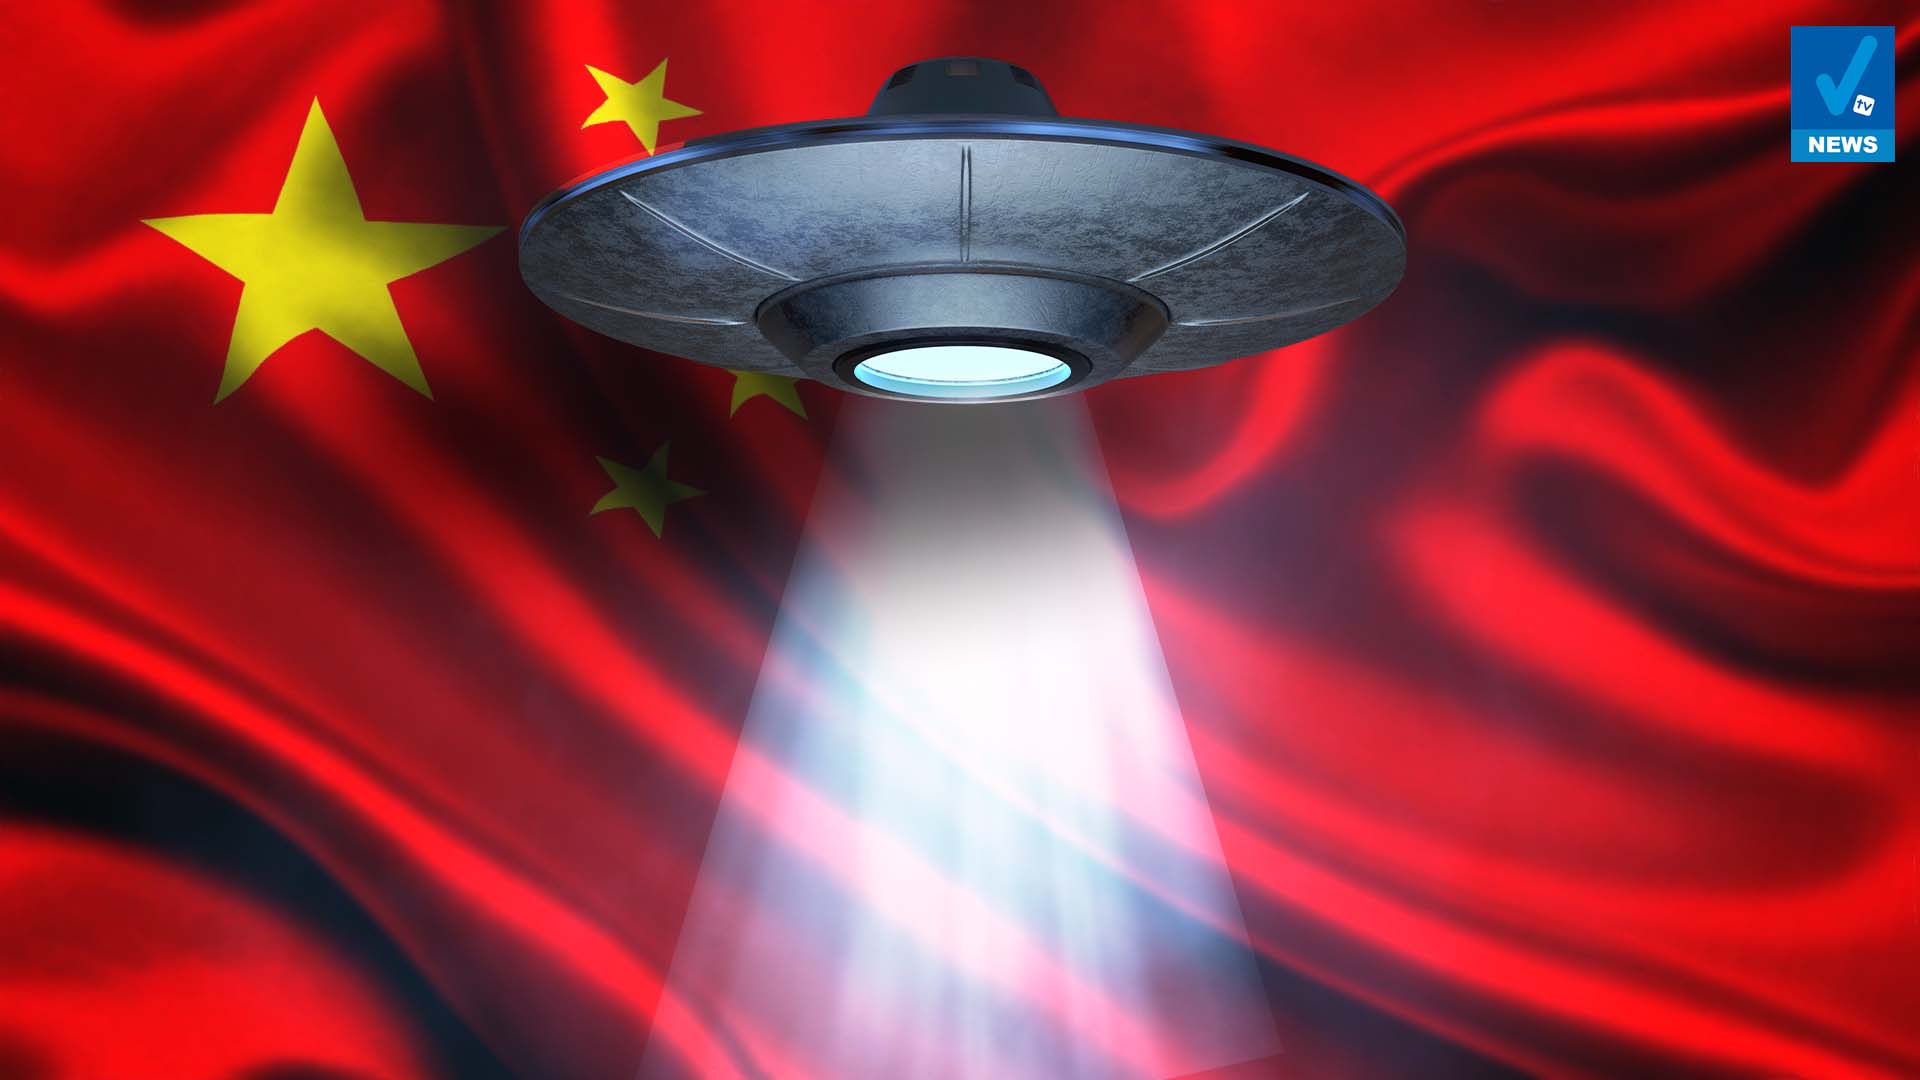 Pechino “trova” gli alieni. Anche la Cina si prepara al progetto Blue Beam? – Visione TV